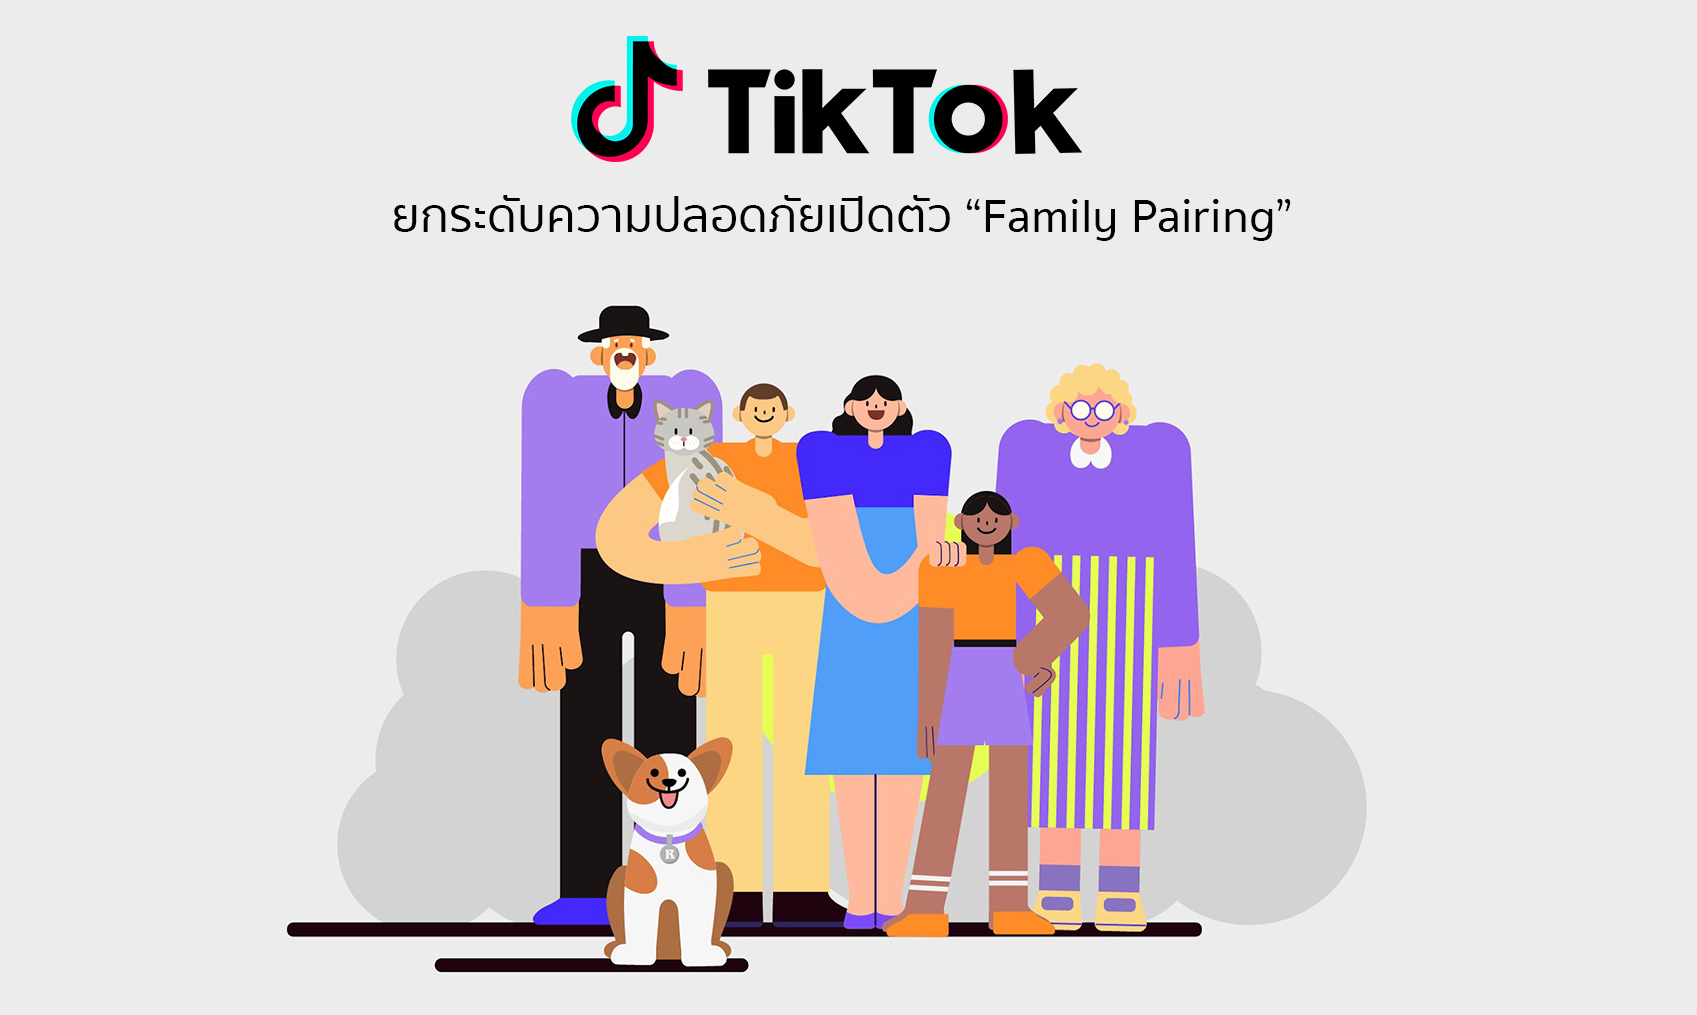 TikTok ยกระดับความปลอดภัยเพิ่มความมั่นใจให้พ่อแม่ เปิดตัว Family Pairing เชื่อมแอคเคาน์ควบคุมเนื้อหาการใช้ของบุตรหลาน ได้อย่างปลอดภัยไร้กังวล